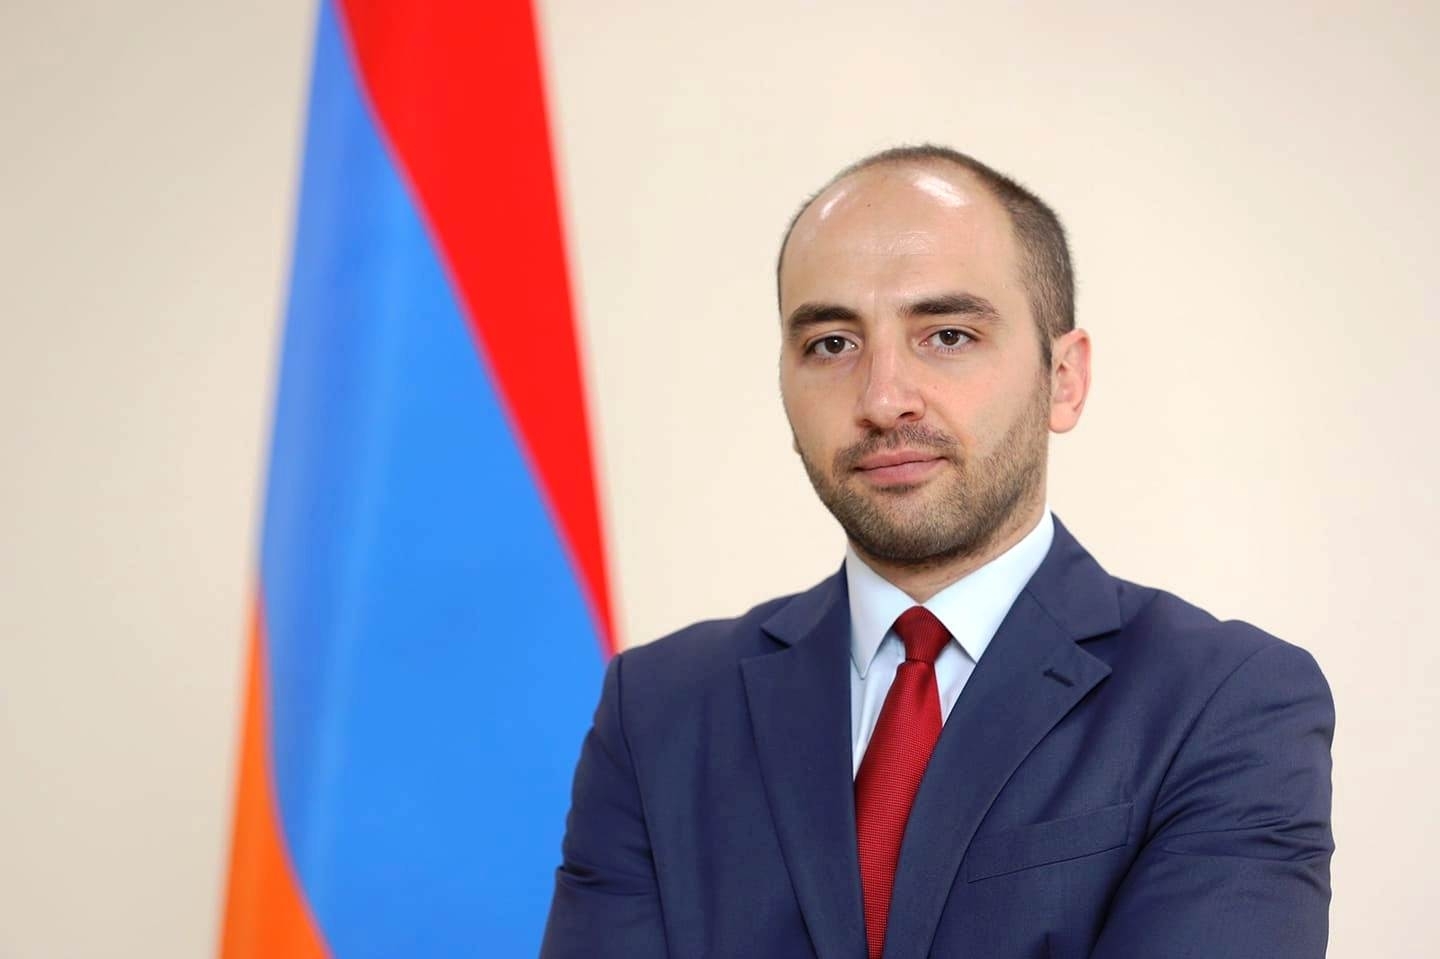 Քննարկվում է Հայաստանի և Թուրքիայի բանագնացների առաջին հանդիպումը Մոսկվայում անցկացնելու հնարավորությունը